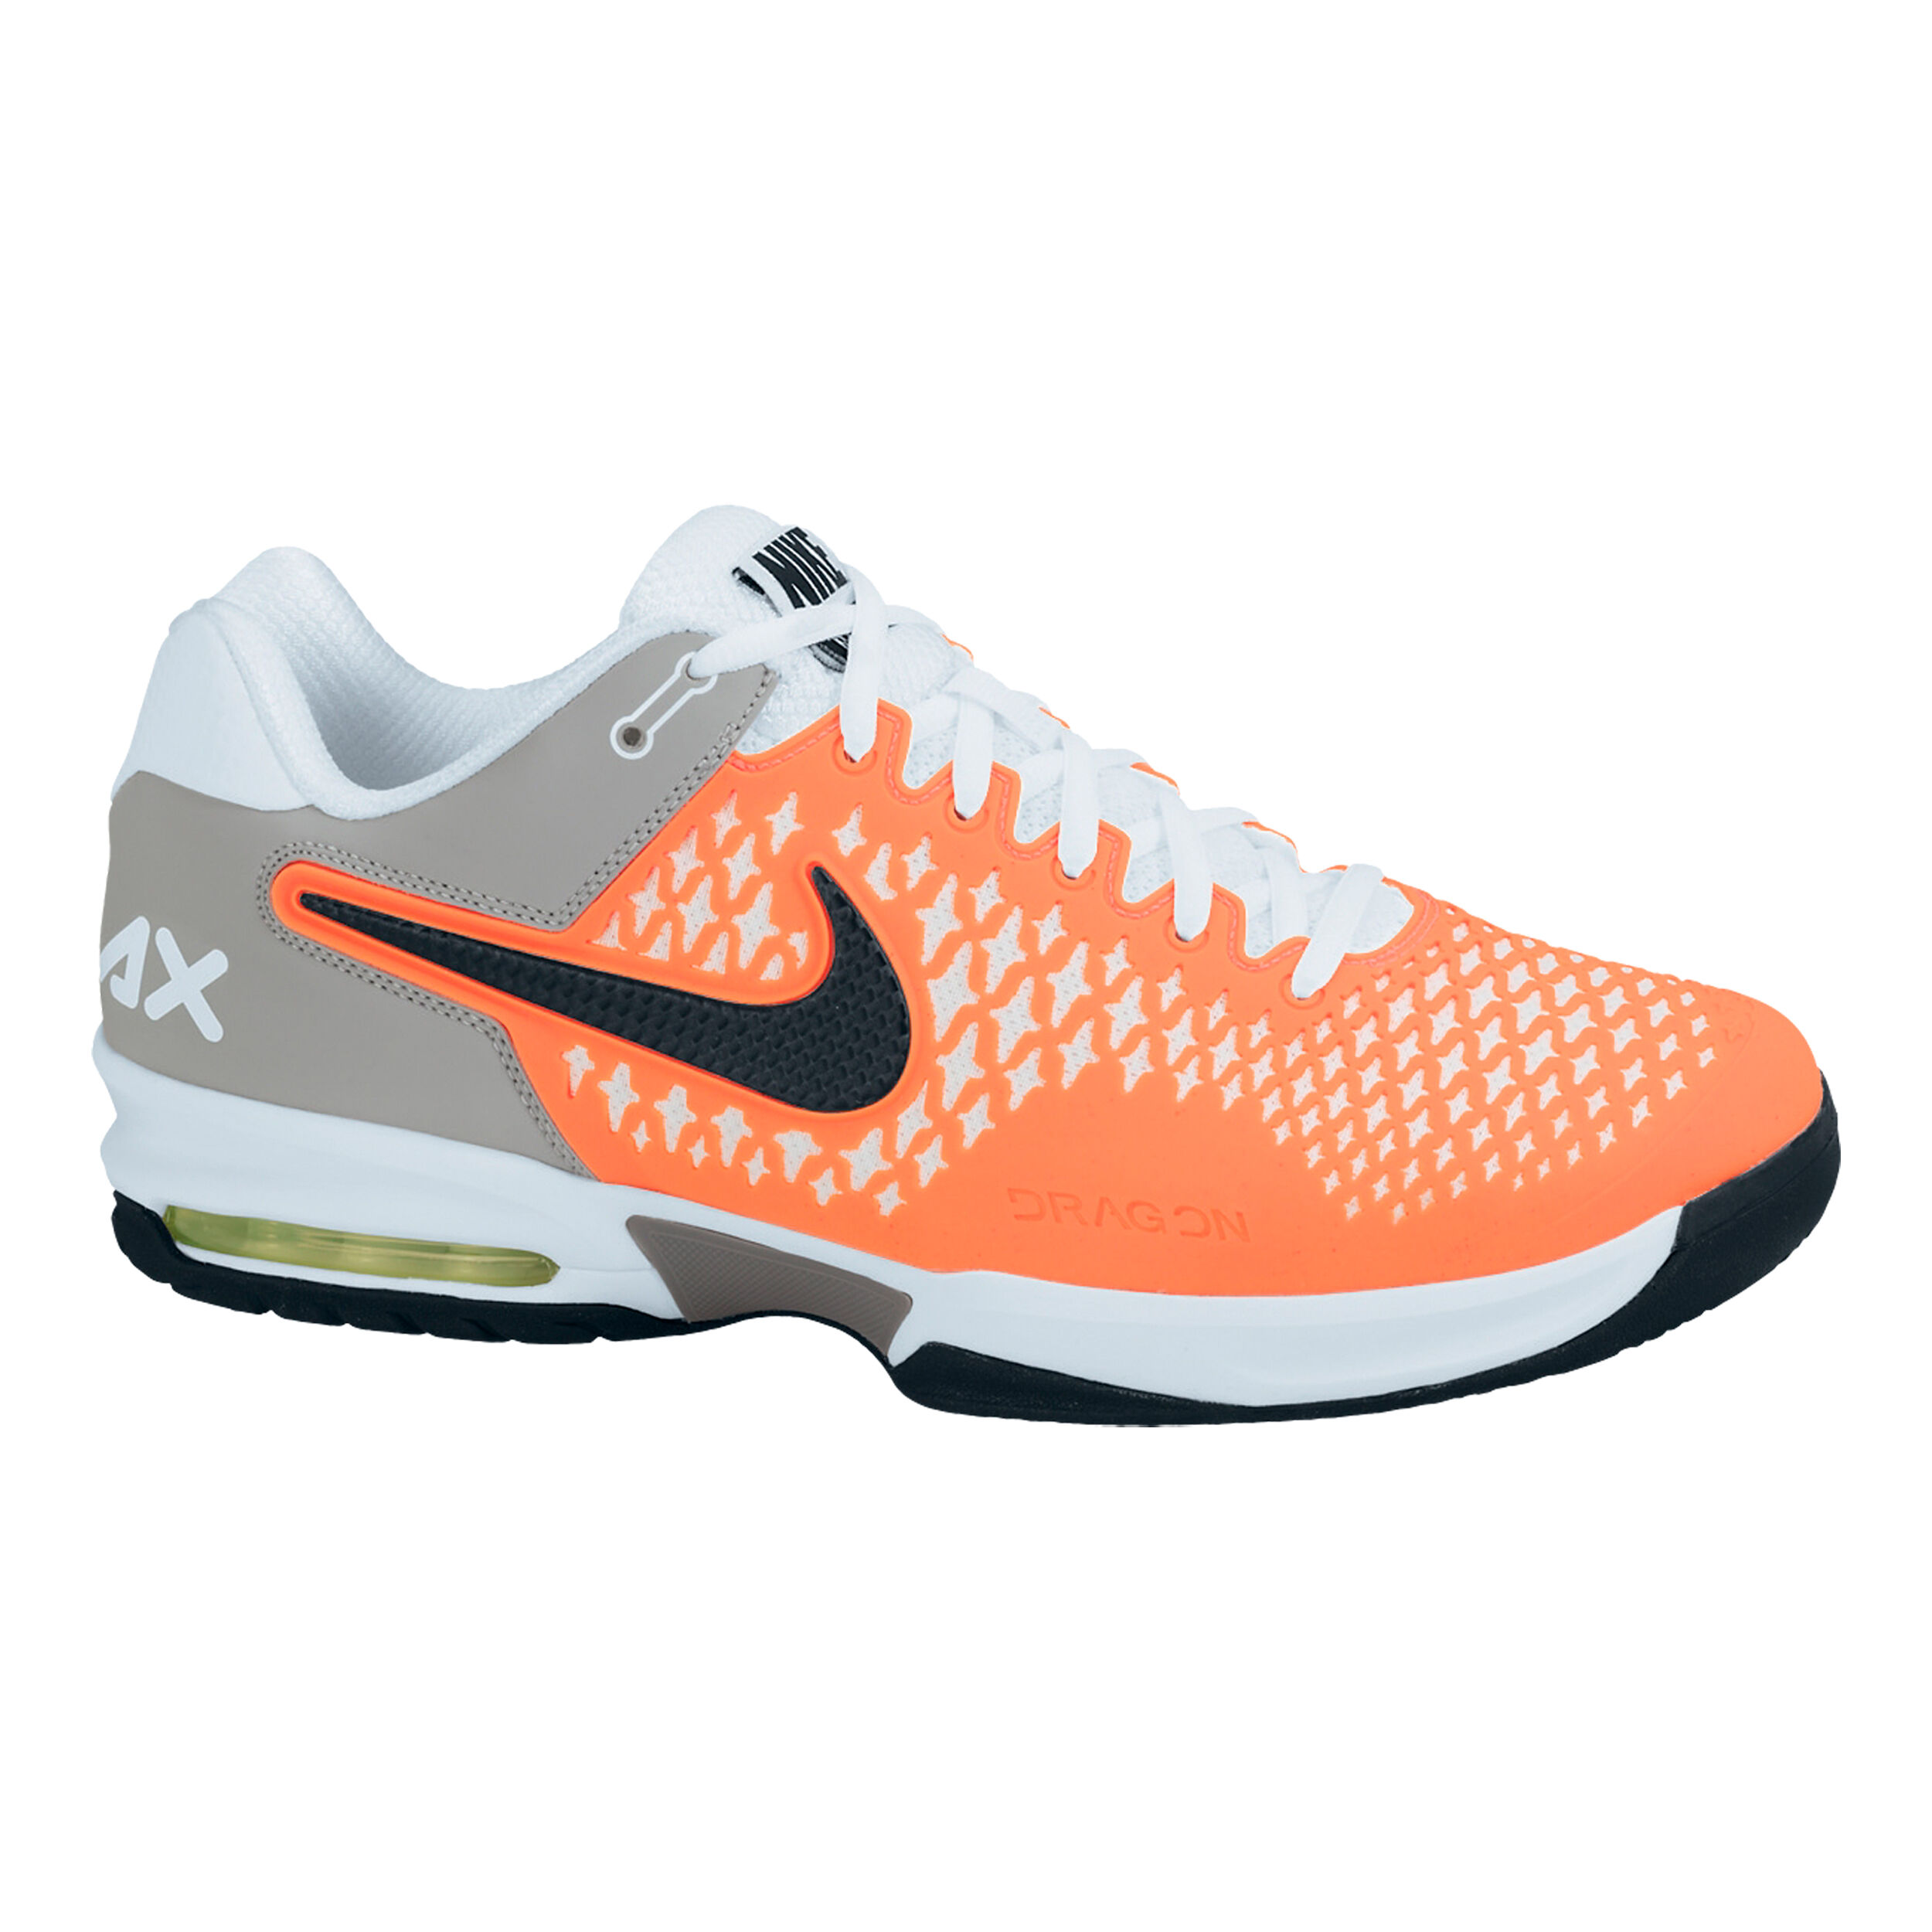 Nike Air Max Cage Scarpa Per Tutte Le Superfici Uomini - Arancione, Grigio  compra online | Tennis-Point